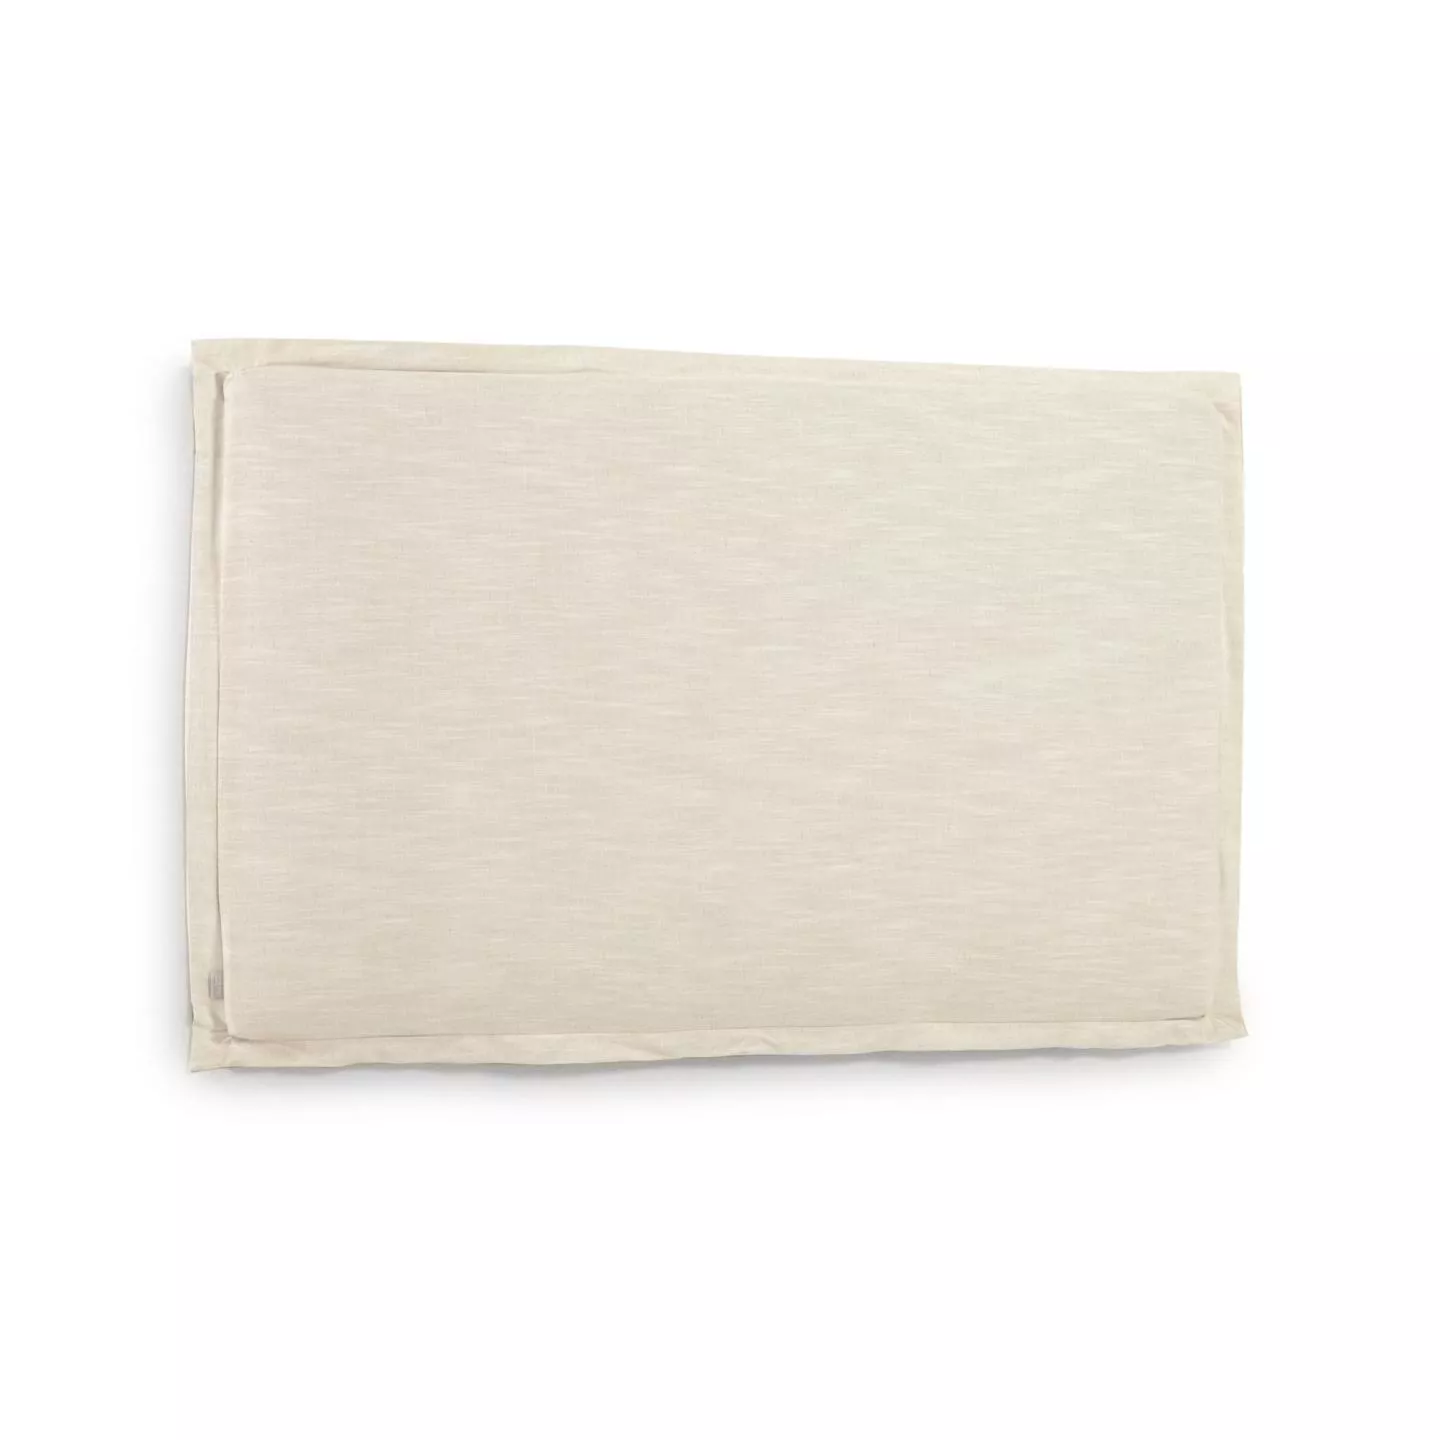 Изголовье La Forma лен белого цвета Tanit со съемным чехлом 186 x 106 см